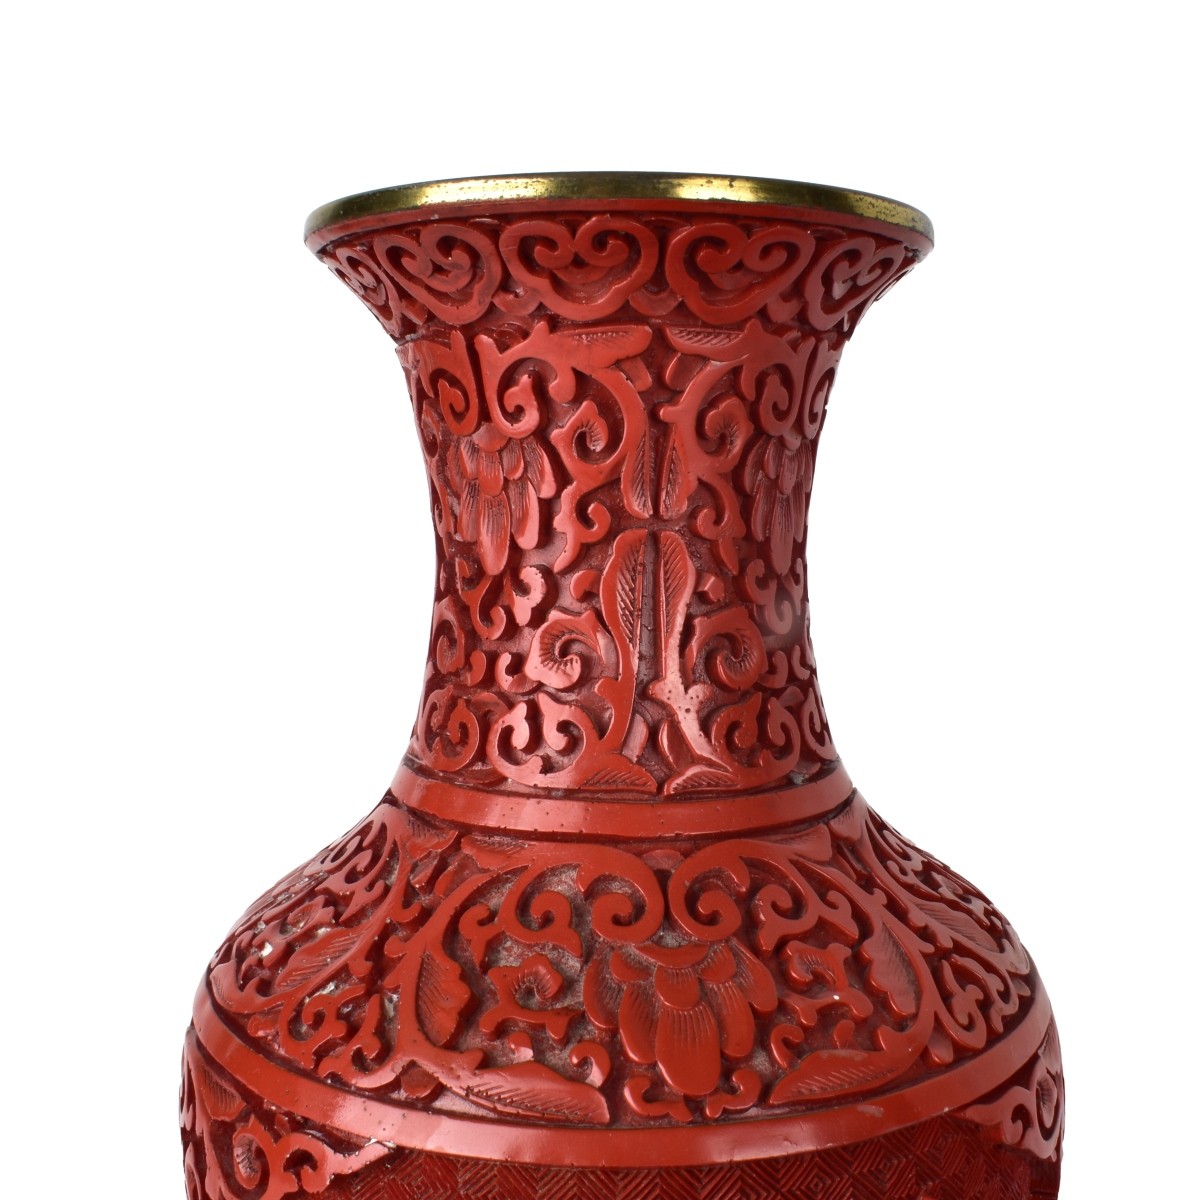 Four (4) Cinnabar Vases